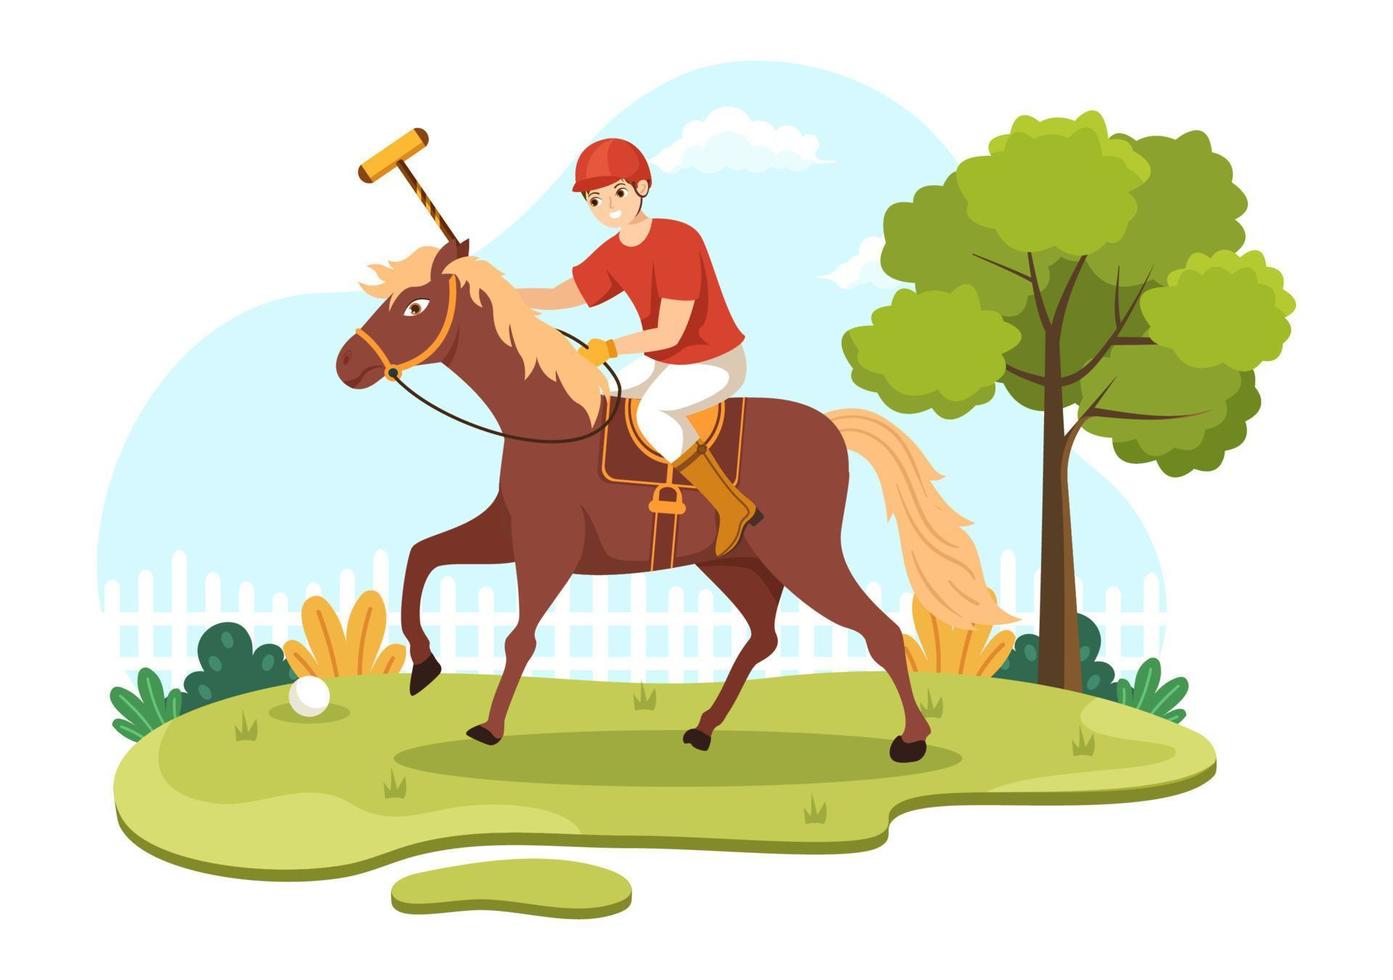 polo häst sporter med spelare ridning häst och innehav pinne använda sig av Utrustning uppsättning i platt tecknad serie affisch hand dragen mall illustration vektor